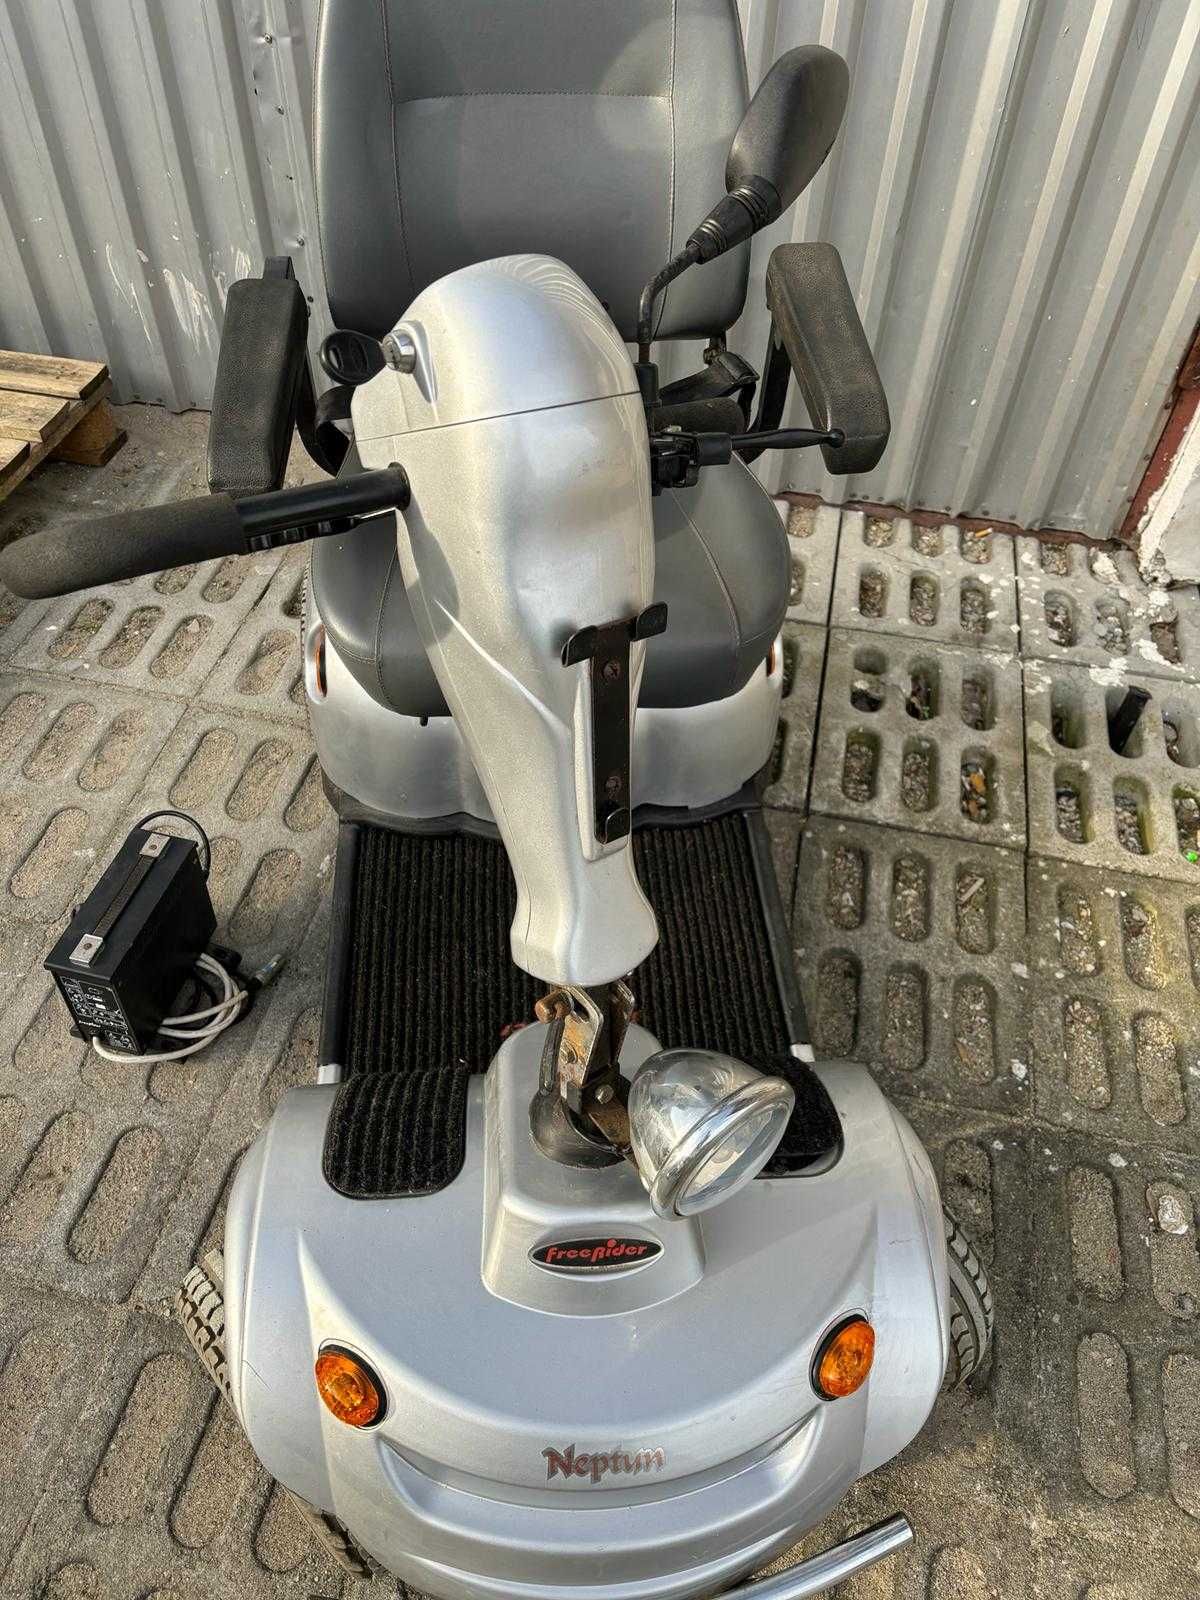 skuter elektryczny dla seniorów - wózek inwalidzki - FreeRider NEPTUN